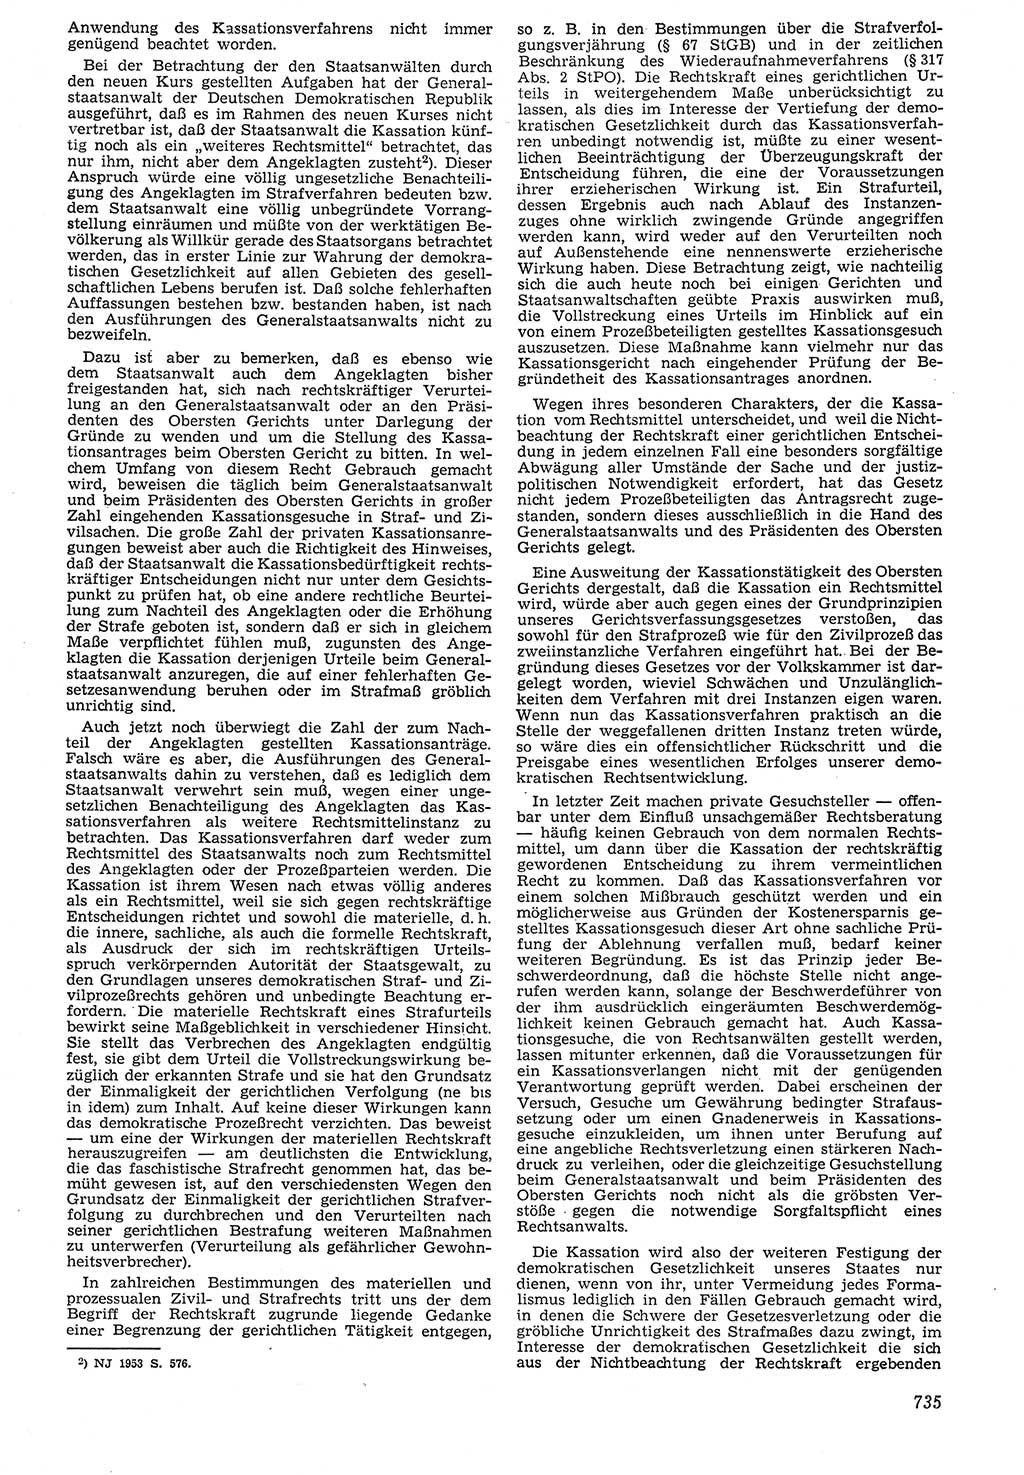 Neue Justiz (NJ), Zeitschrift für Recht und Rechtswissenschaft [Deutsche Demokratische Republik (DDR)], 7. Jahrgang 1953, Seite 735 (NJ DDR 1953, S. 735)